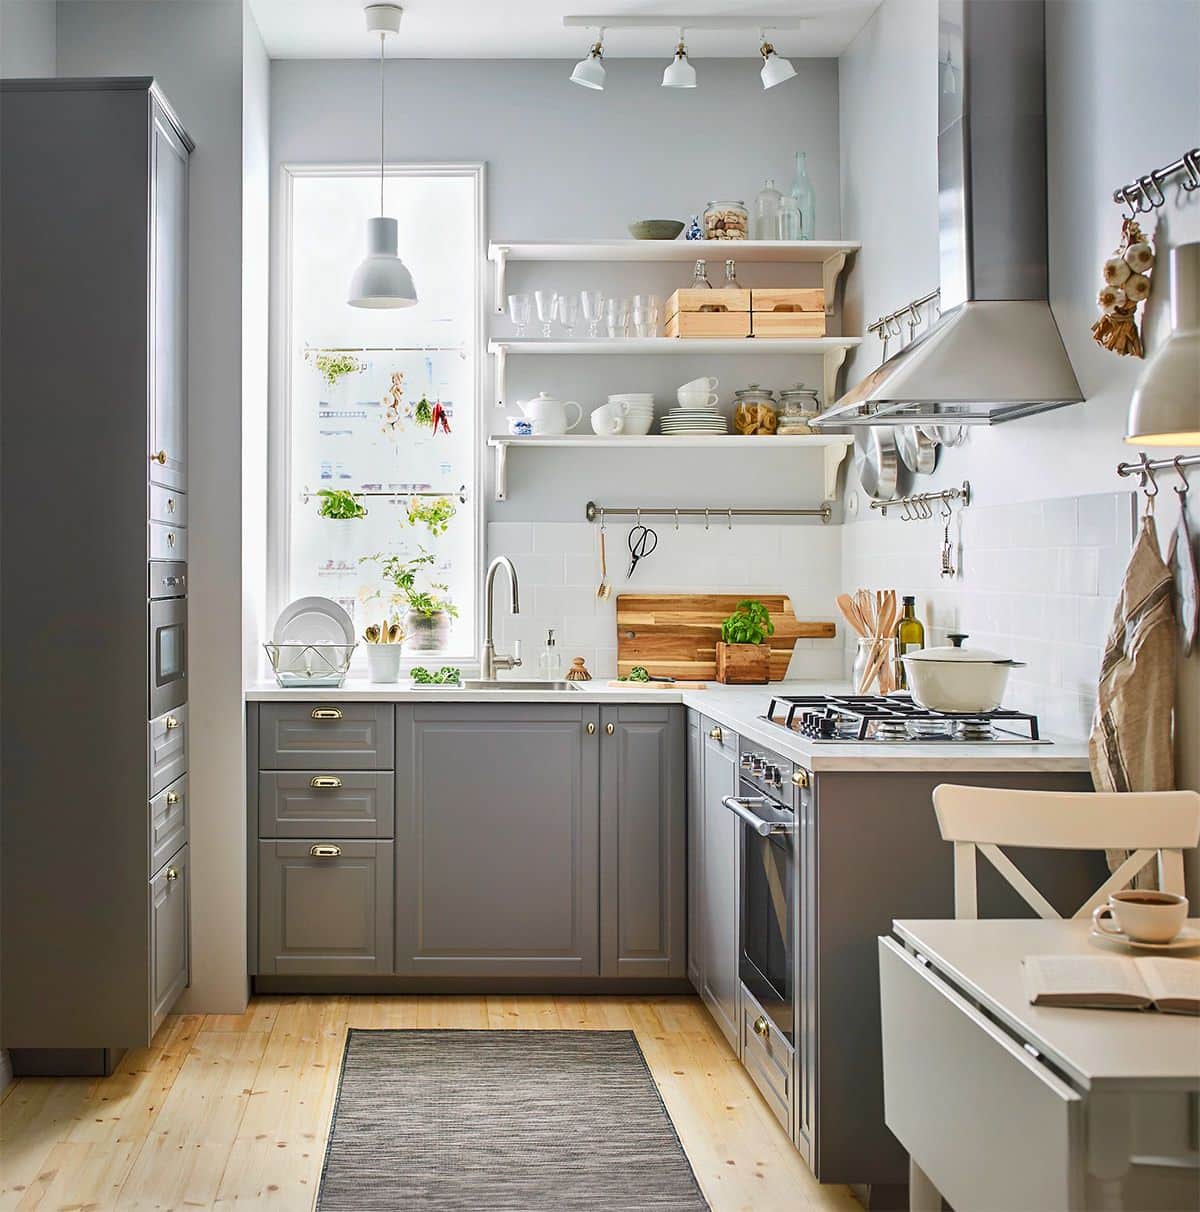 kitchen interior design new ideas